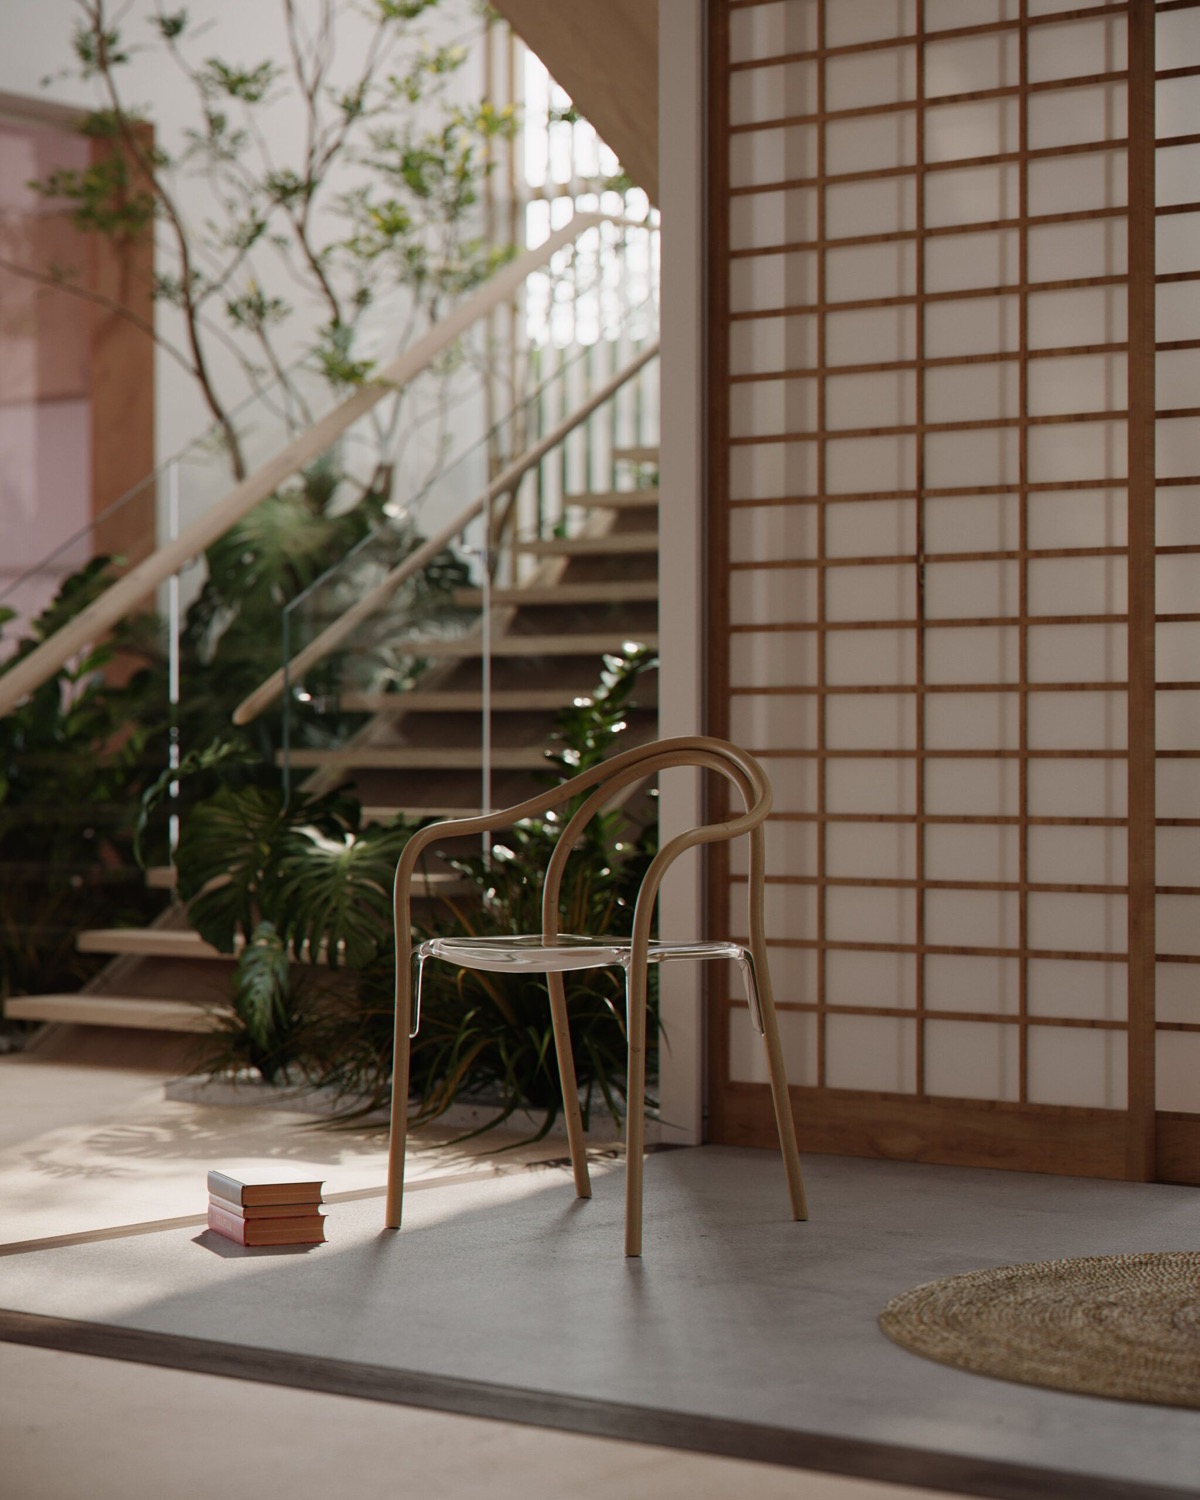 宁静感觉的现代日式风格室内设计